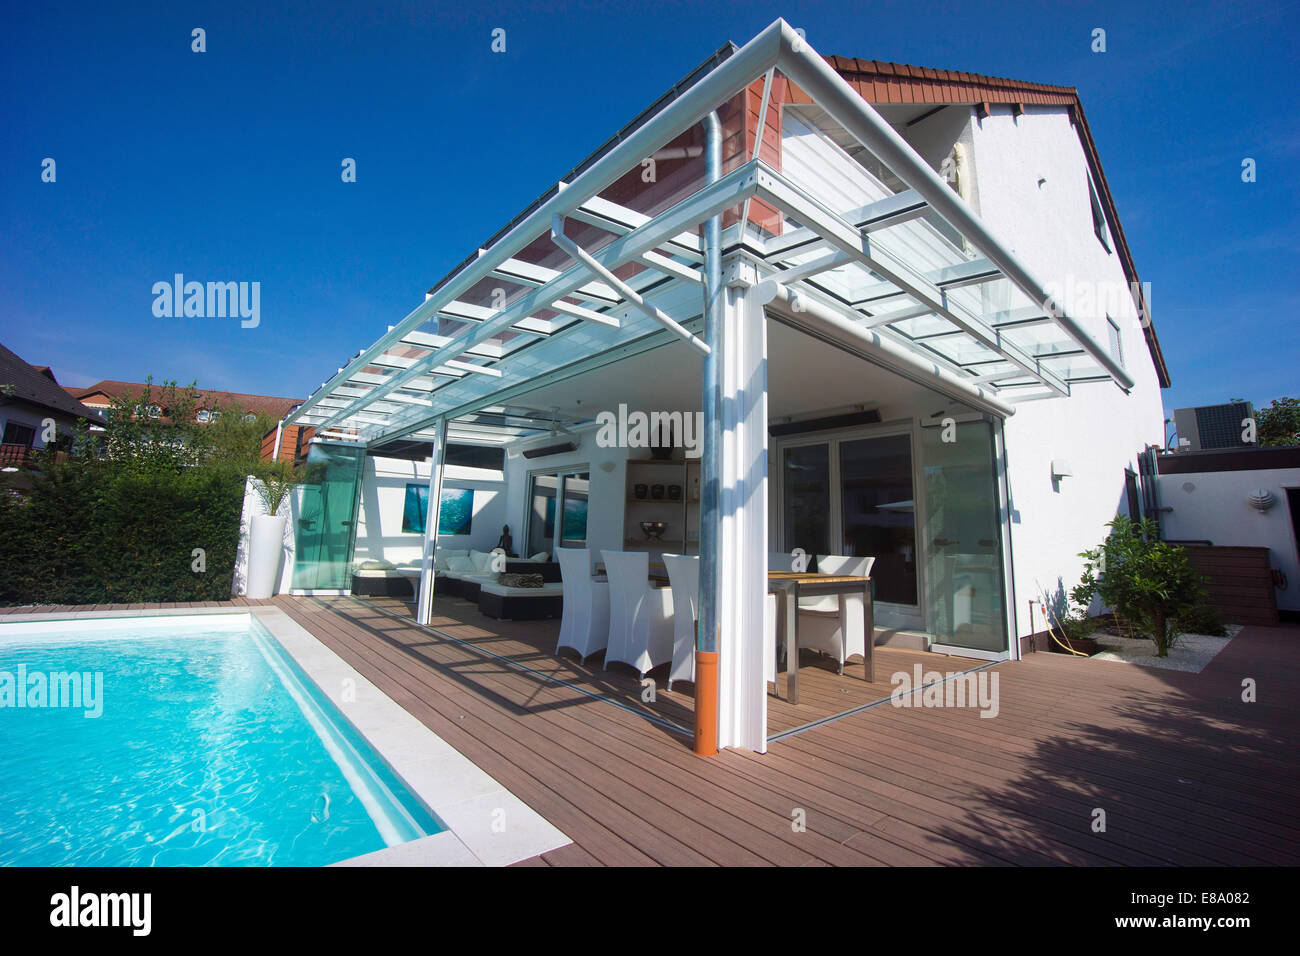 Chalet privado con un conservatorio, una piscina y una terraza, Alemania Foto de stock